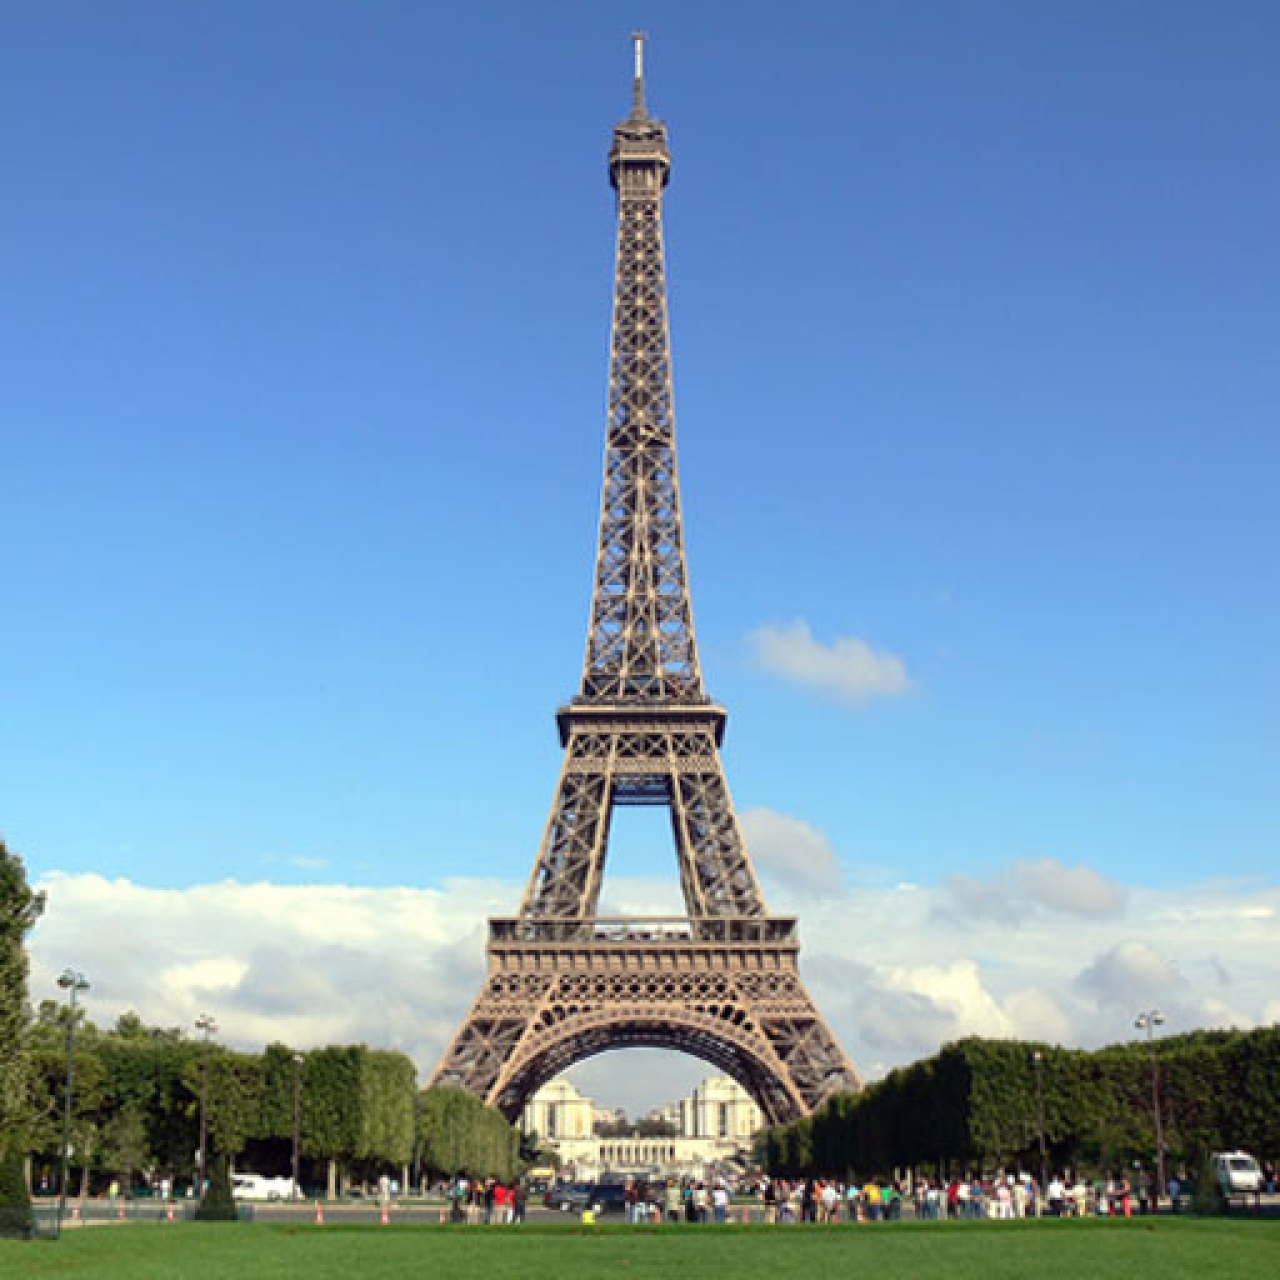 Plätzchen-Ausstechform "Paris, Eiffelturm", Rot